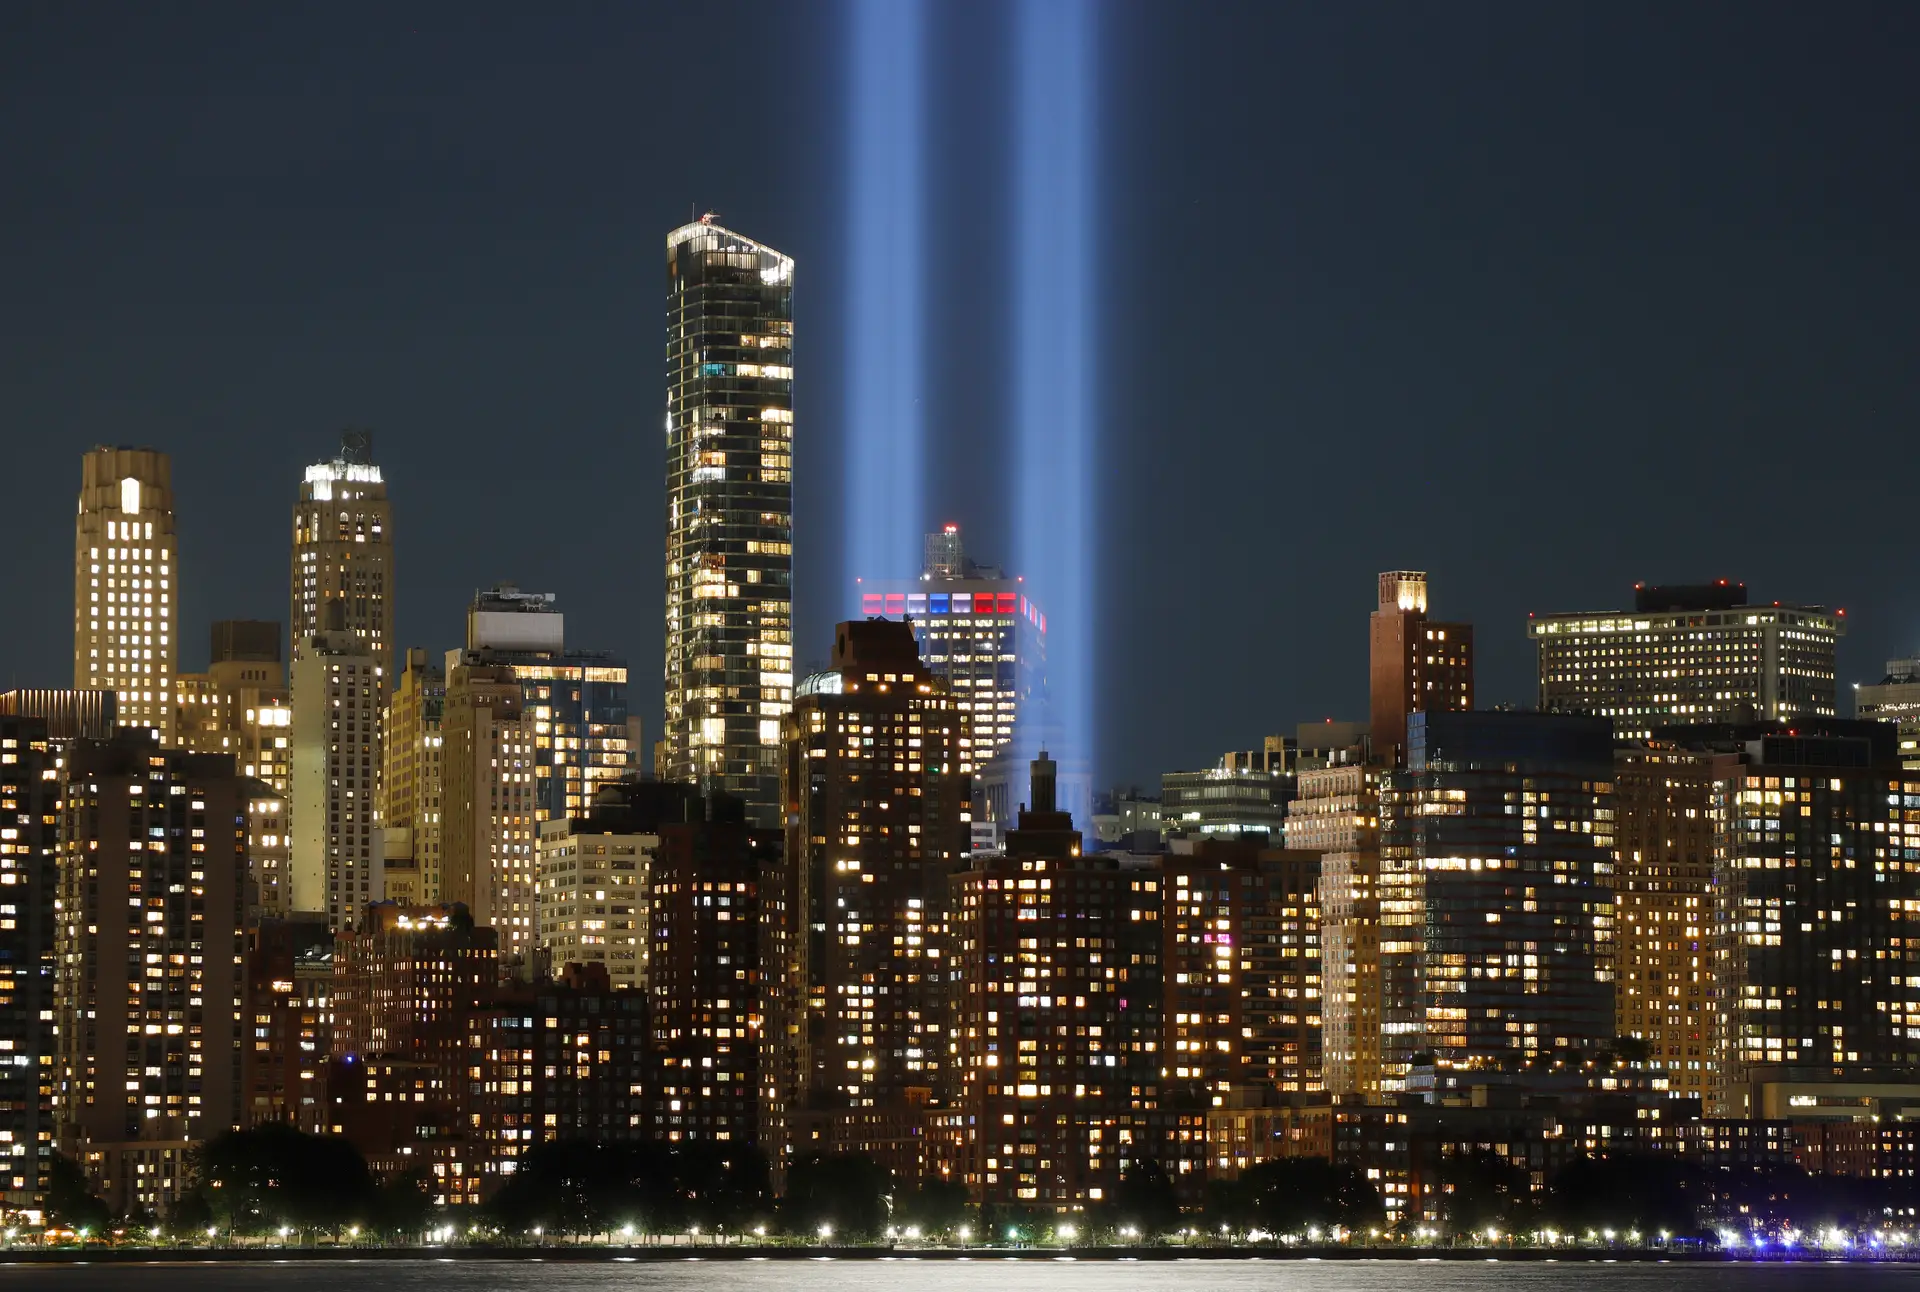 Dois feixes de luz, no local onde se erguiam as Torres Gémeas, iluminam os céus de Nova Iorque, numa homenagem às vítimas do 11 de Setembro